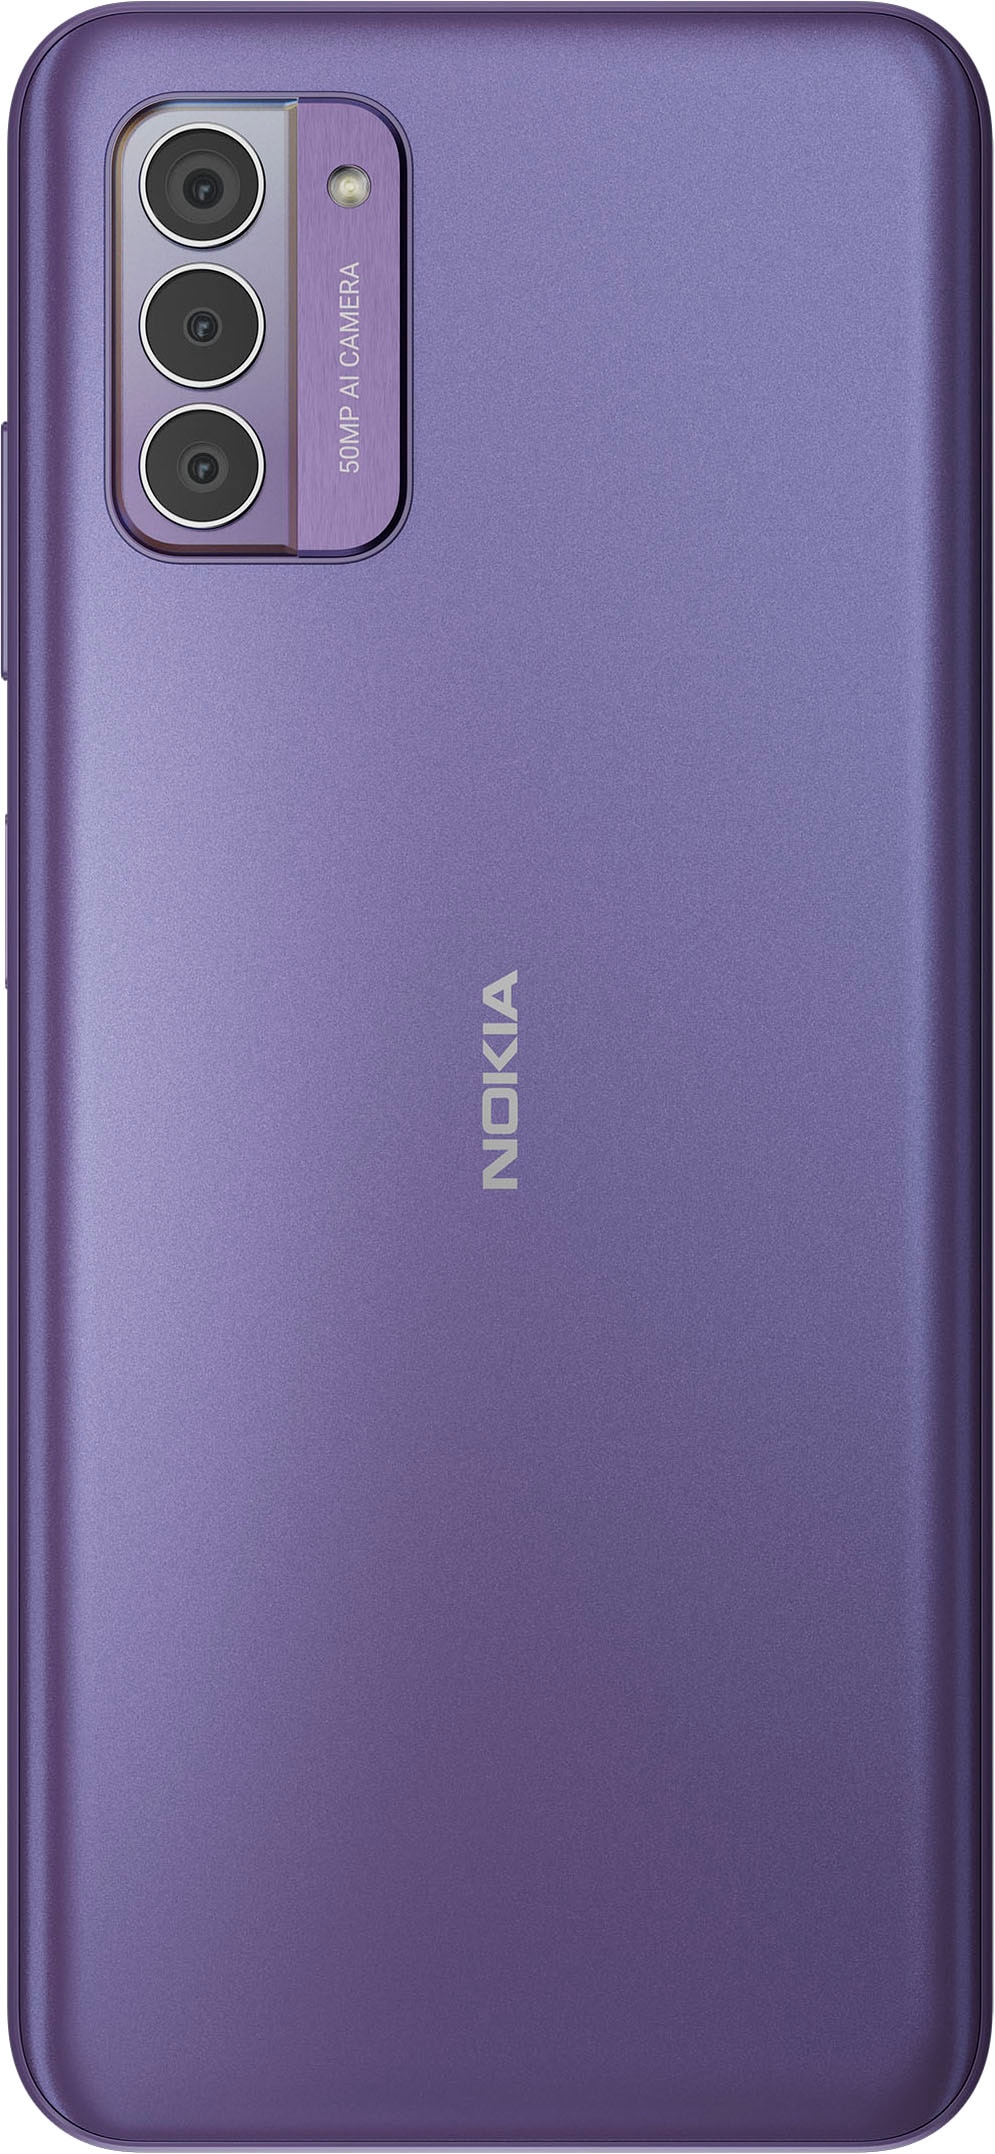 »G42«, Speicherplatz, Kamera Nokia | Smartphone 16,9 50 BAUR Zoll, purple, 128 cm/6,65 GB MP